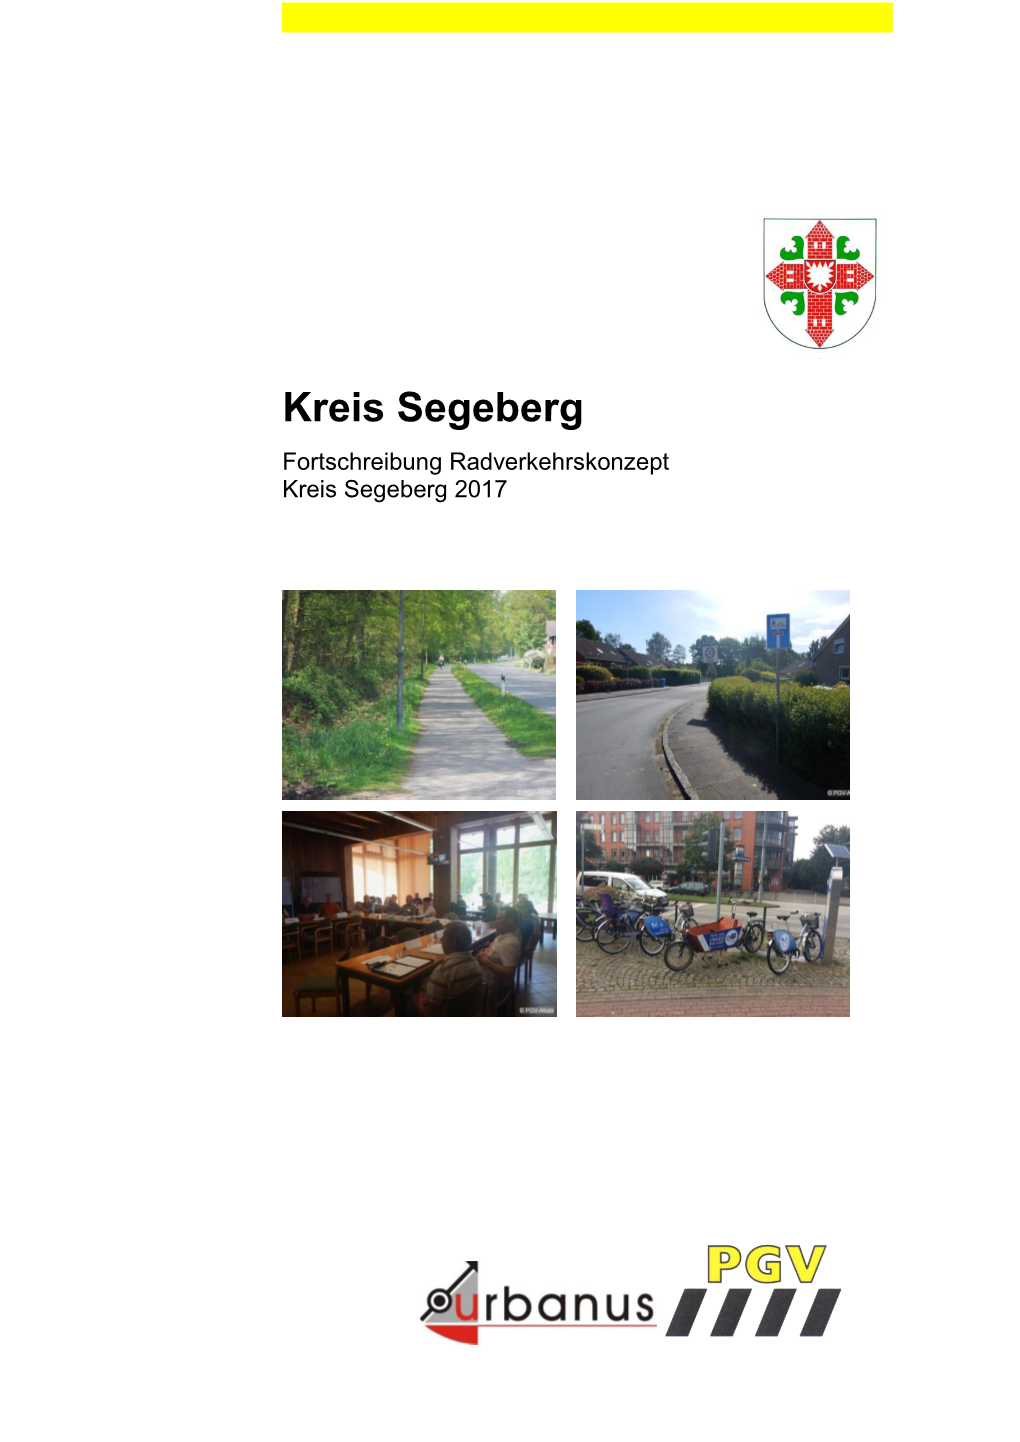 Radverkehrskonzept Kreis Segeberg 2017